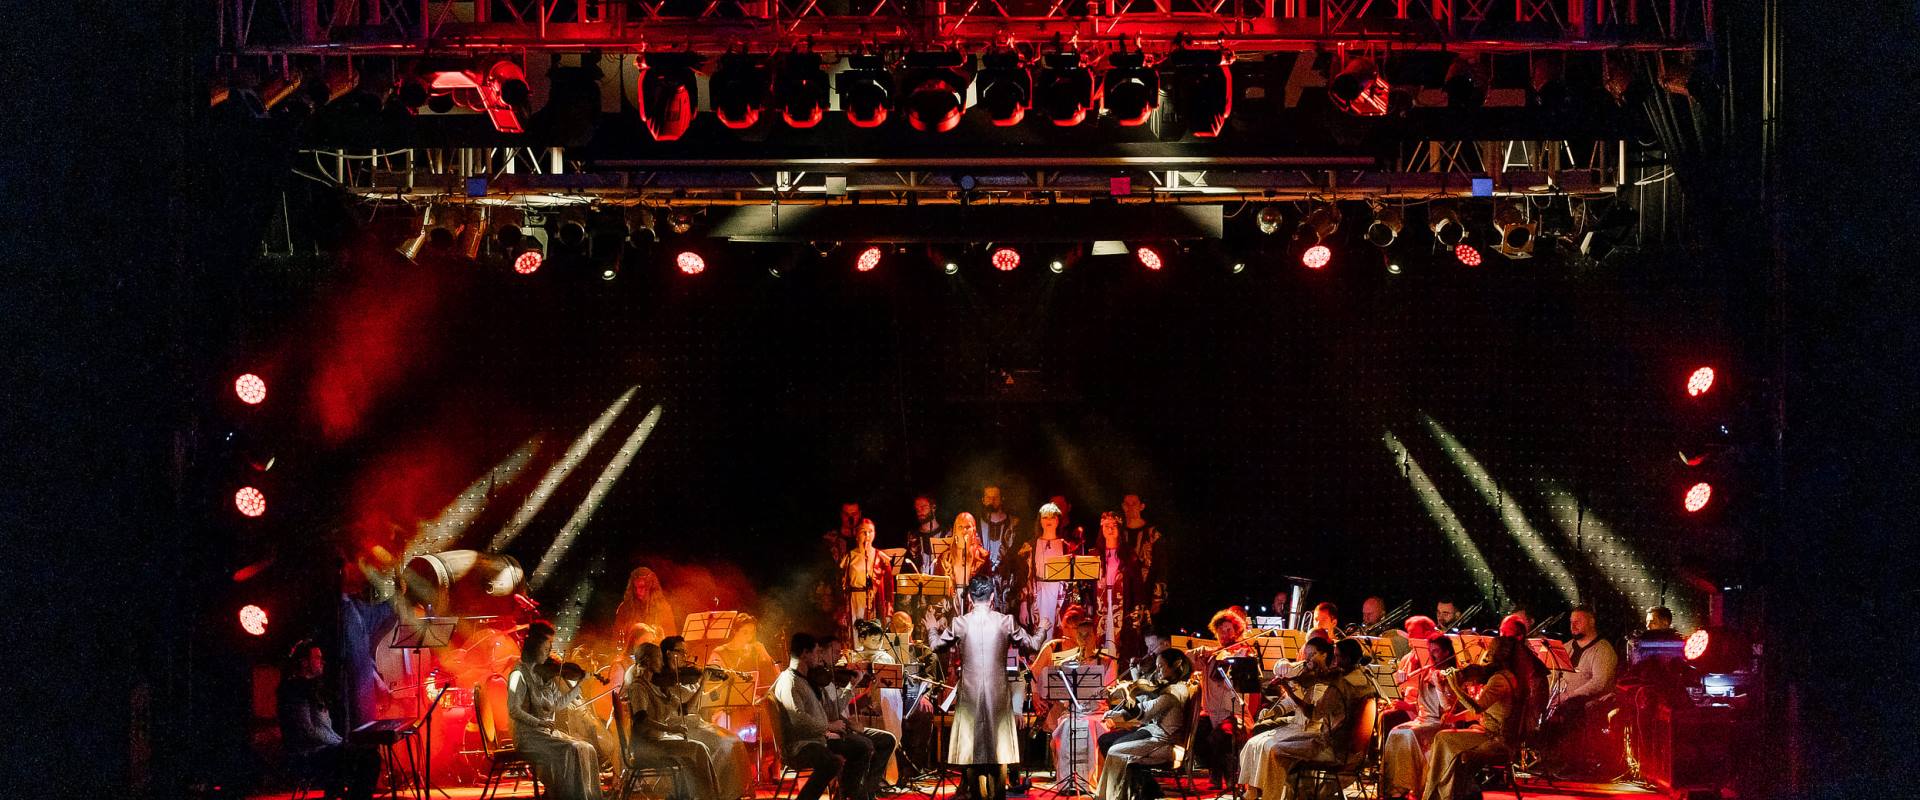 Ein großes Symphonieorchester auf der Bühne mit rotem Licht.